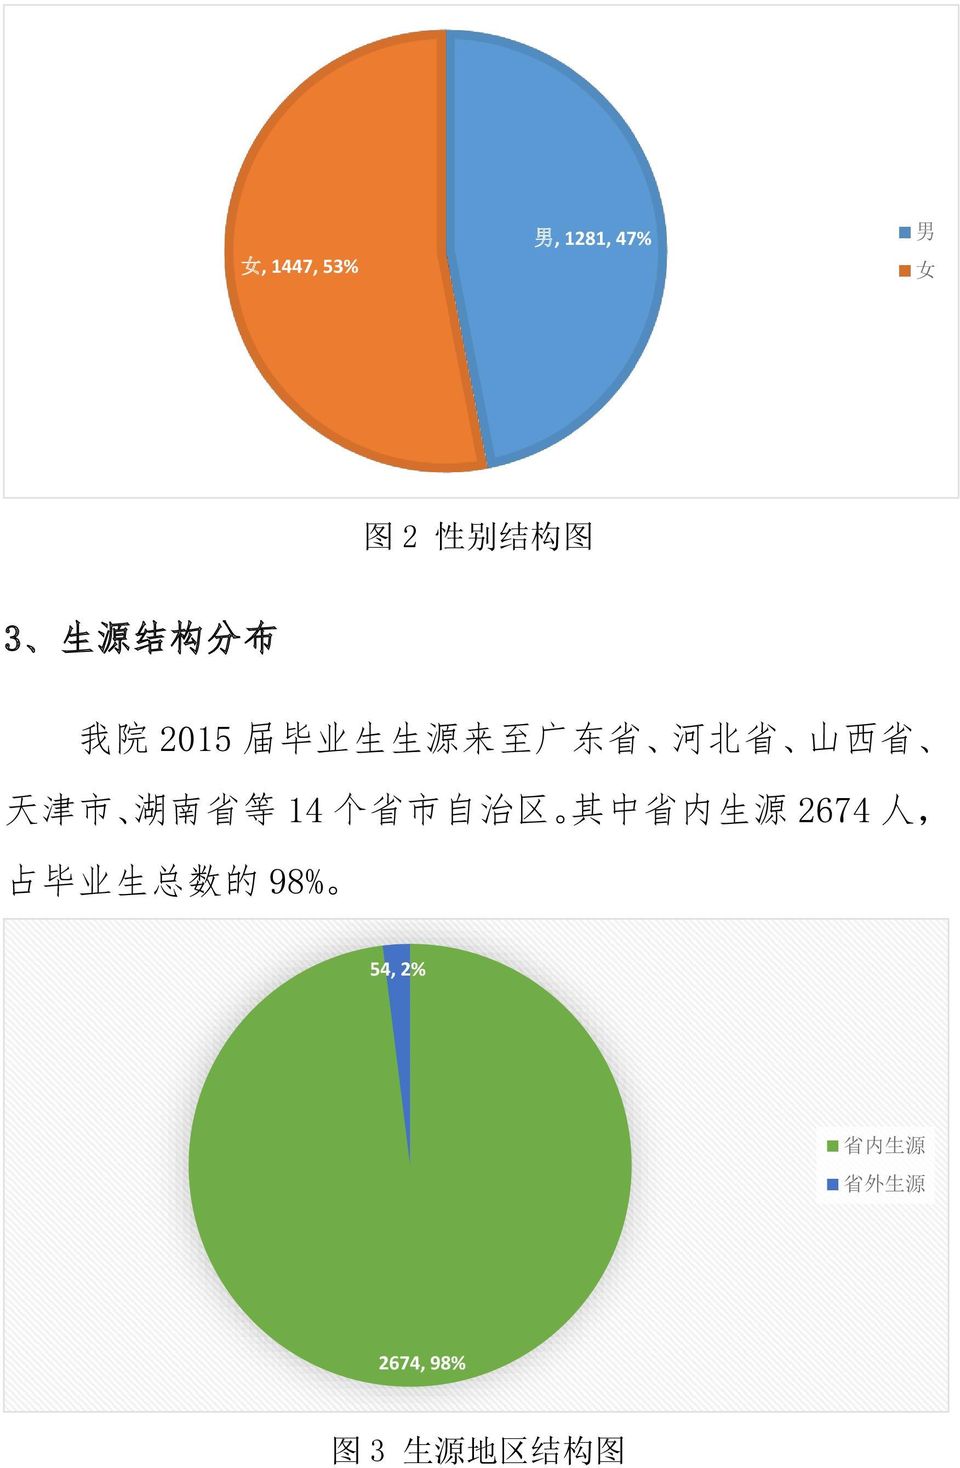 南 省 等 14 个 省 市 自 治 区 其 中 省 内 生 源 2674 人, 占 毕 业 生 总 数 的